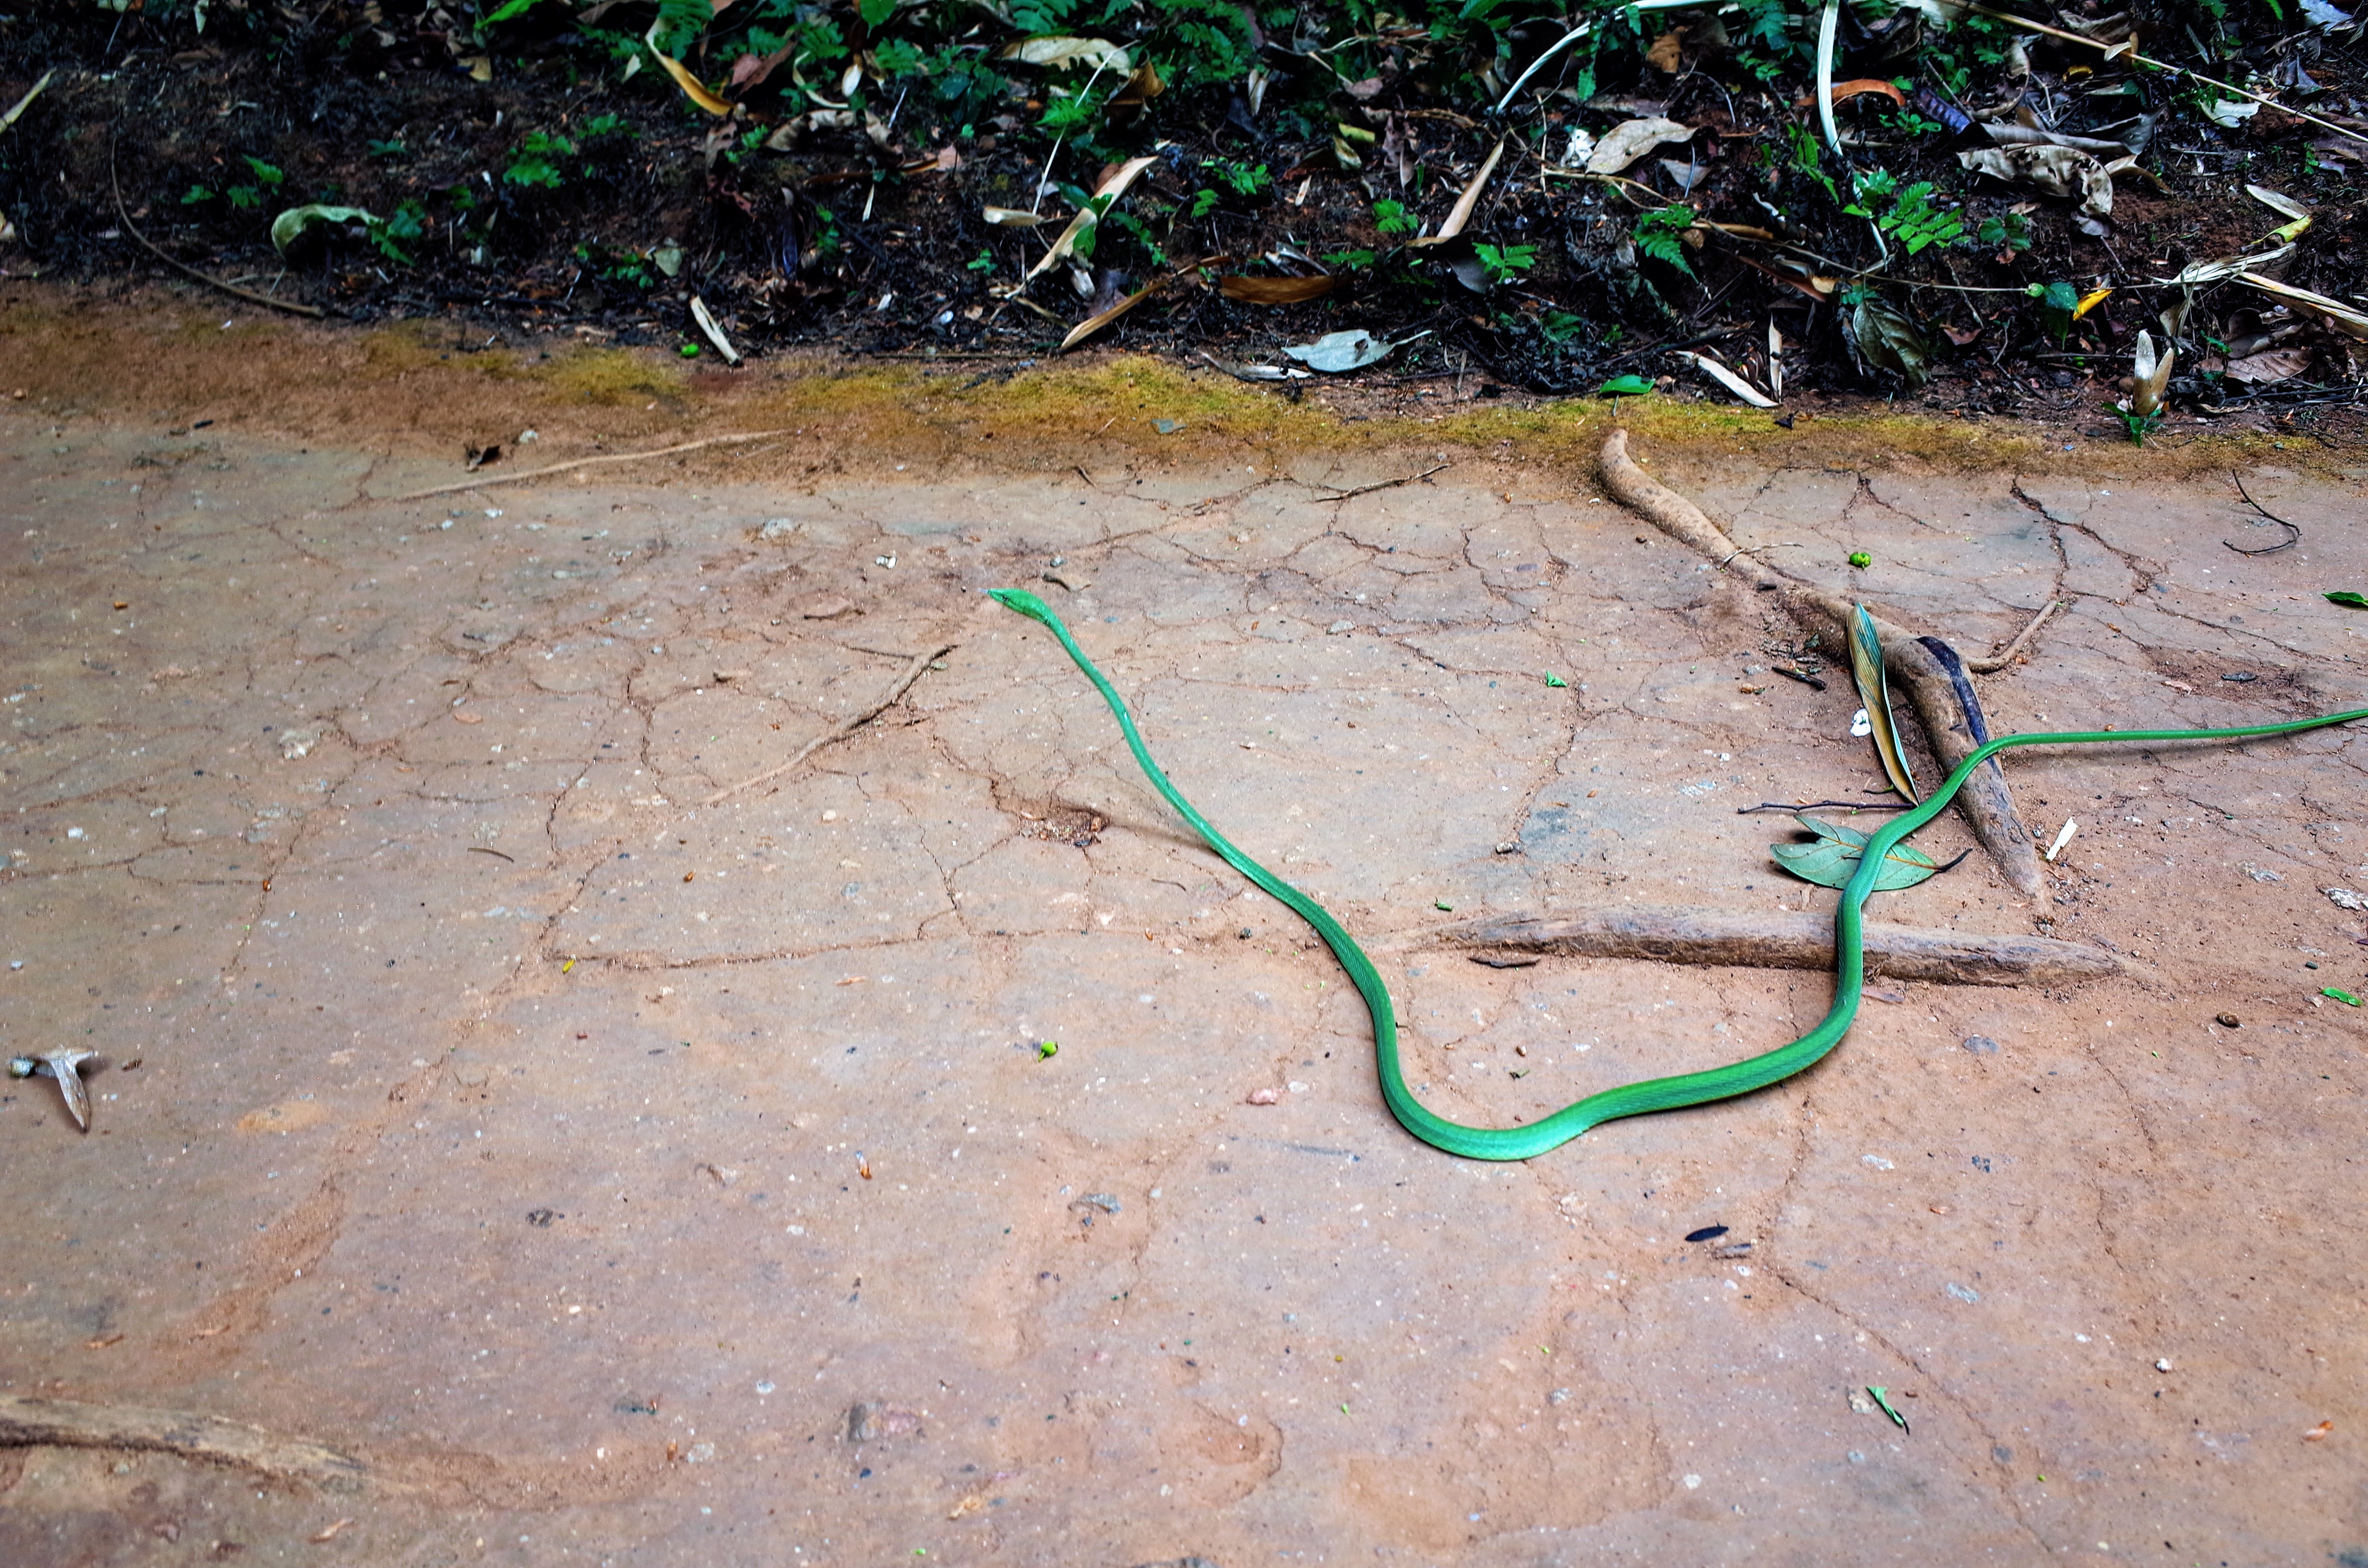 滝の近くで遭遇したヘビ。綺麗な色で、楽しそうにクネってた。ヘビの写真です。